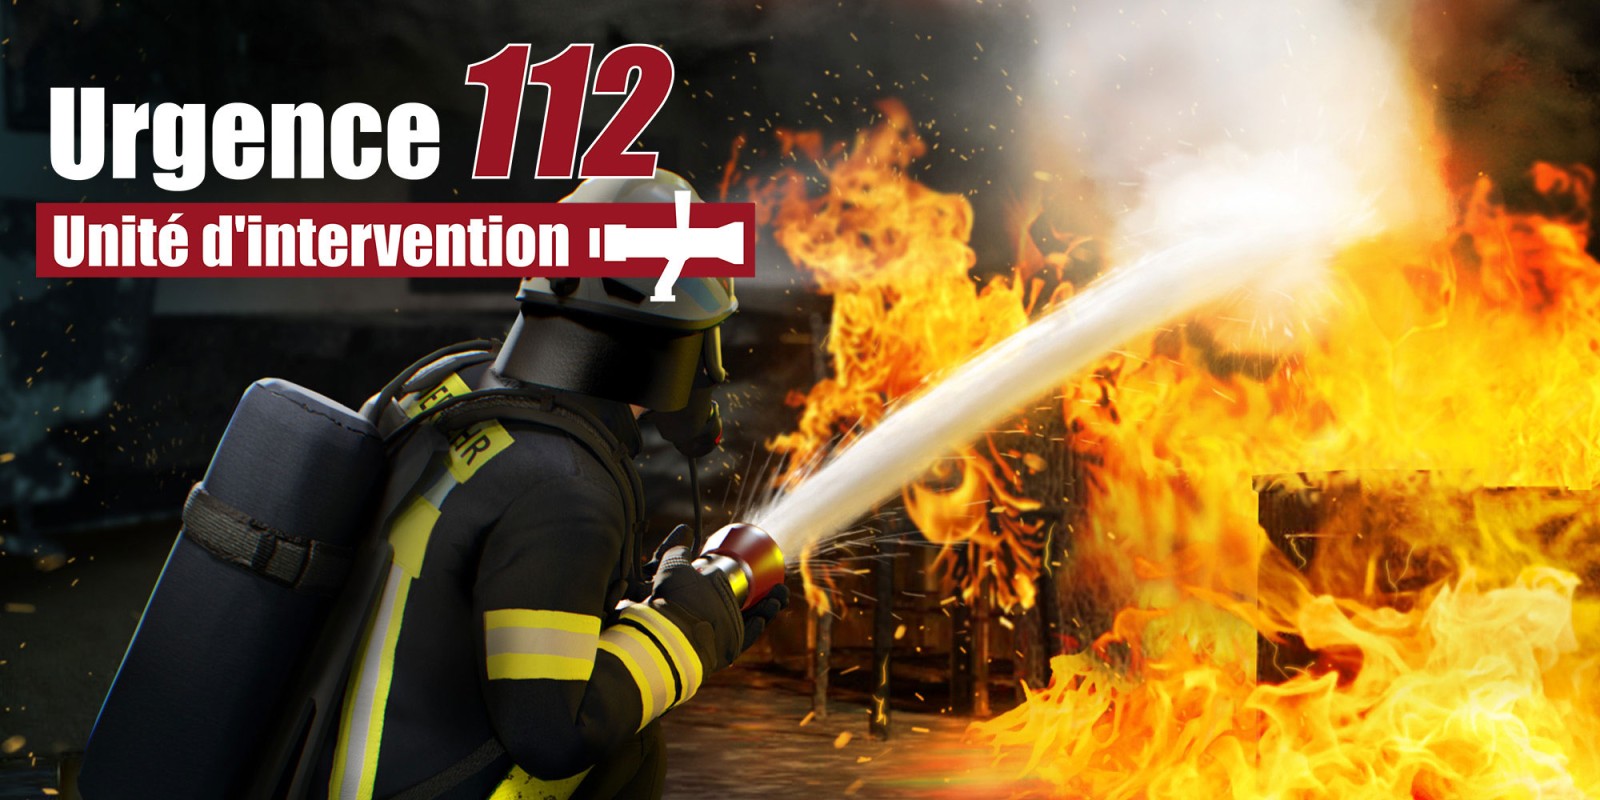 Urgence 112 - Unité d'intervention